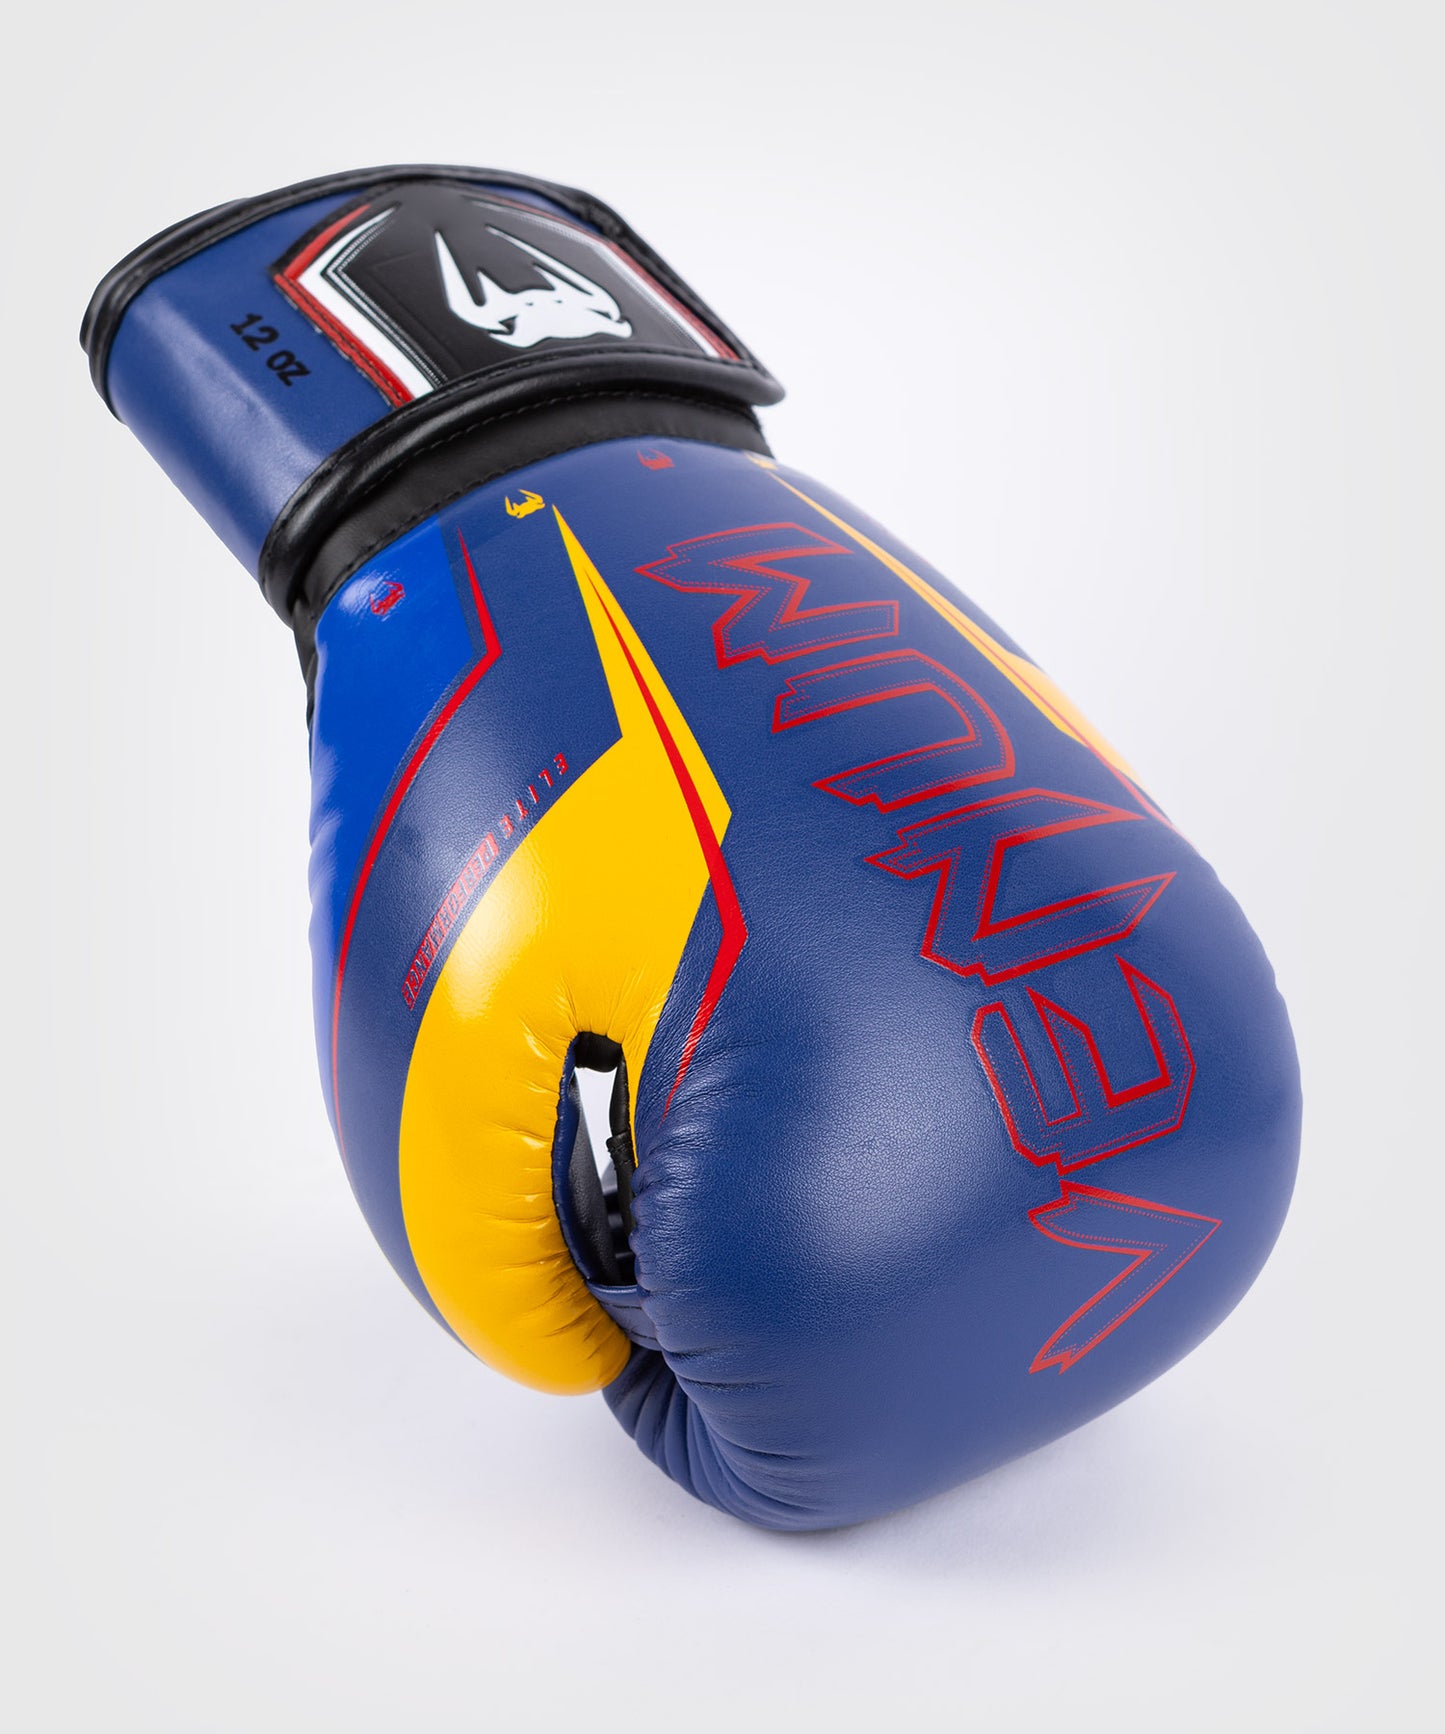 Venum Elite Evo Боксерские перчатки - синий/желтый